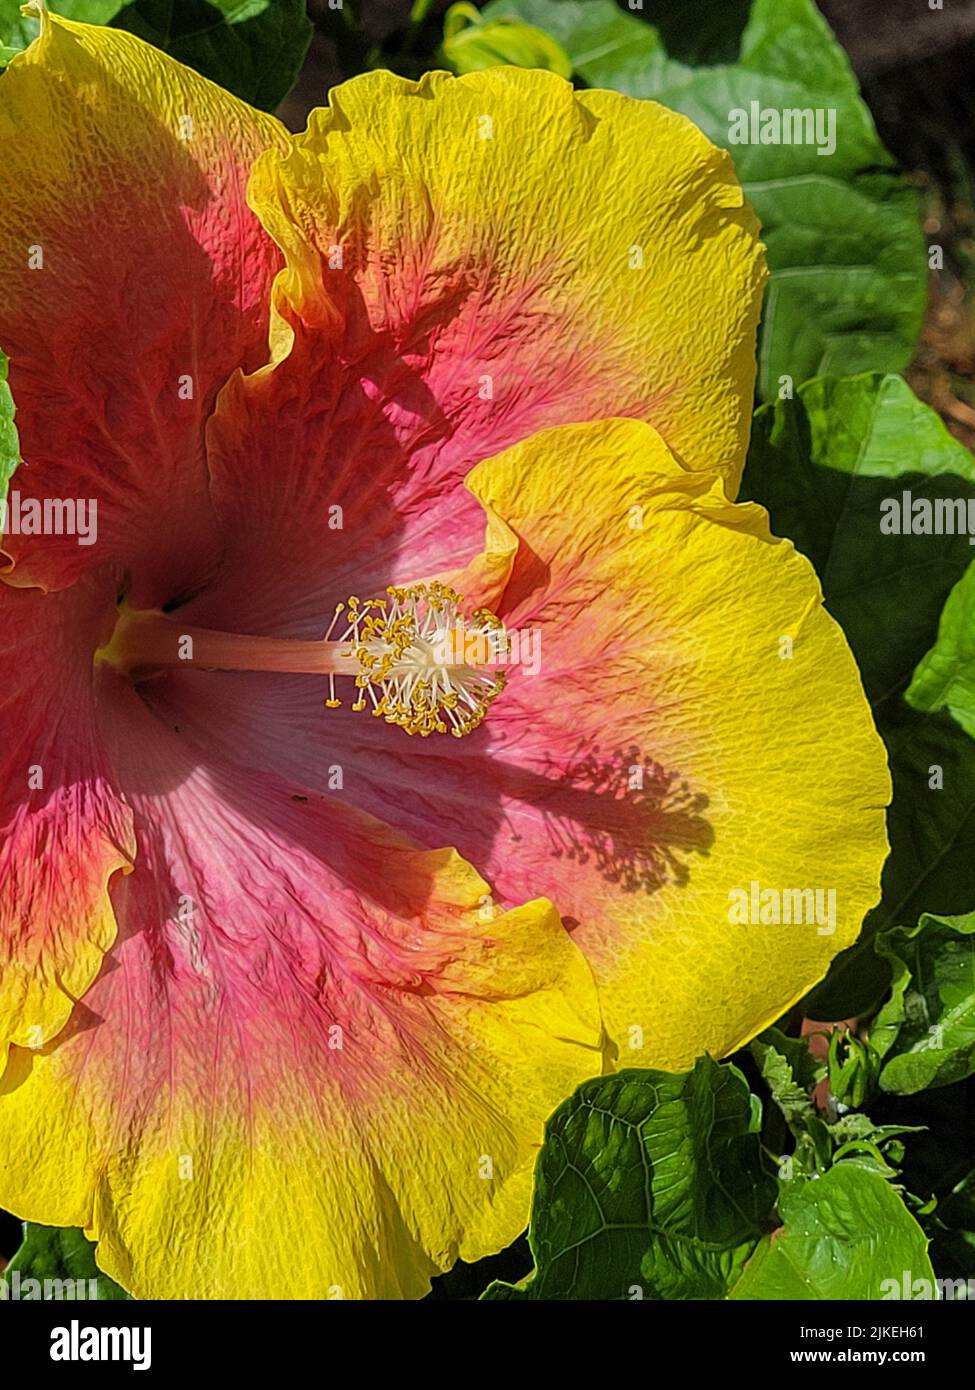 Flor nacional de hawaii fotografías e imágenes de alta resolución - Página  3 - Alamy